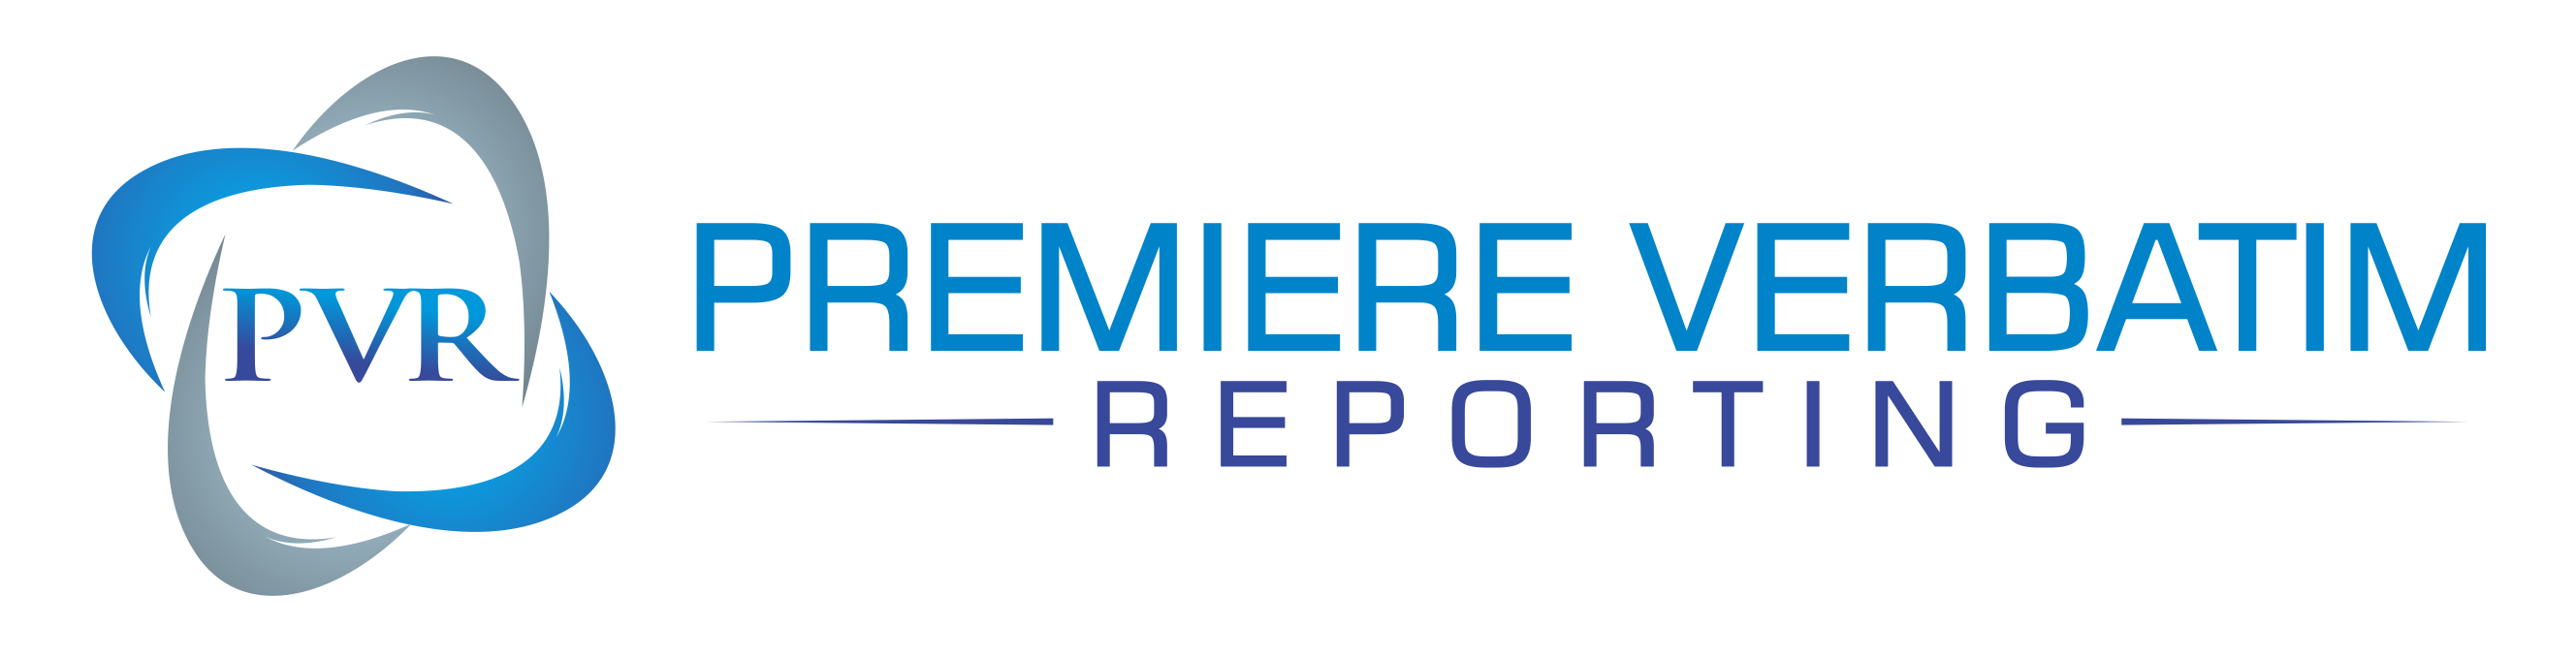 Premiere Verbatim Reporting Logo